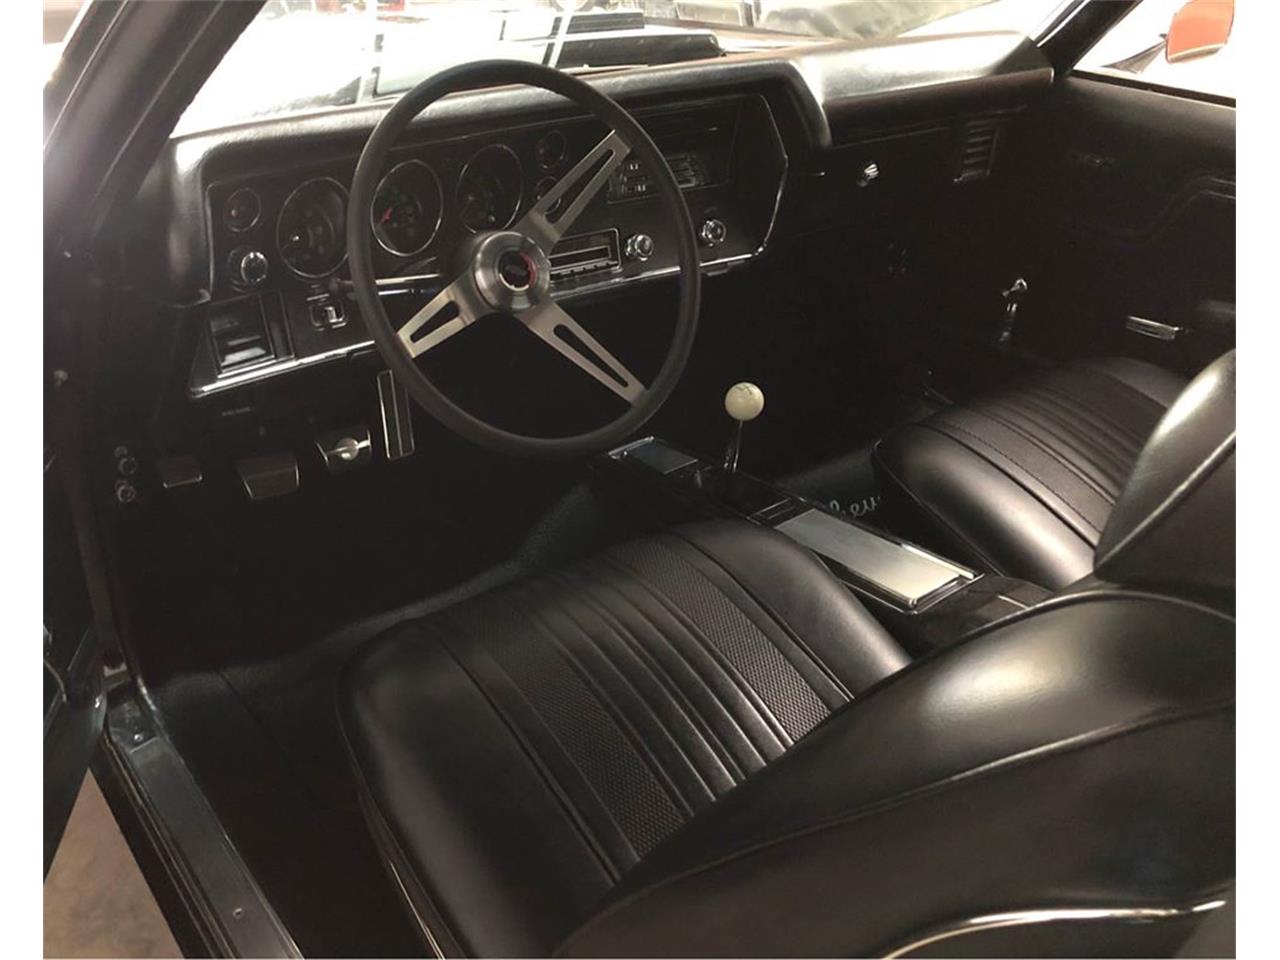 Chevrolet Chevelle V8 LS5 1970 classiccars com 21721075-1970-chevrolet-chevelle-std